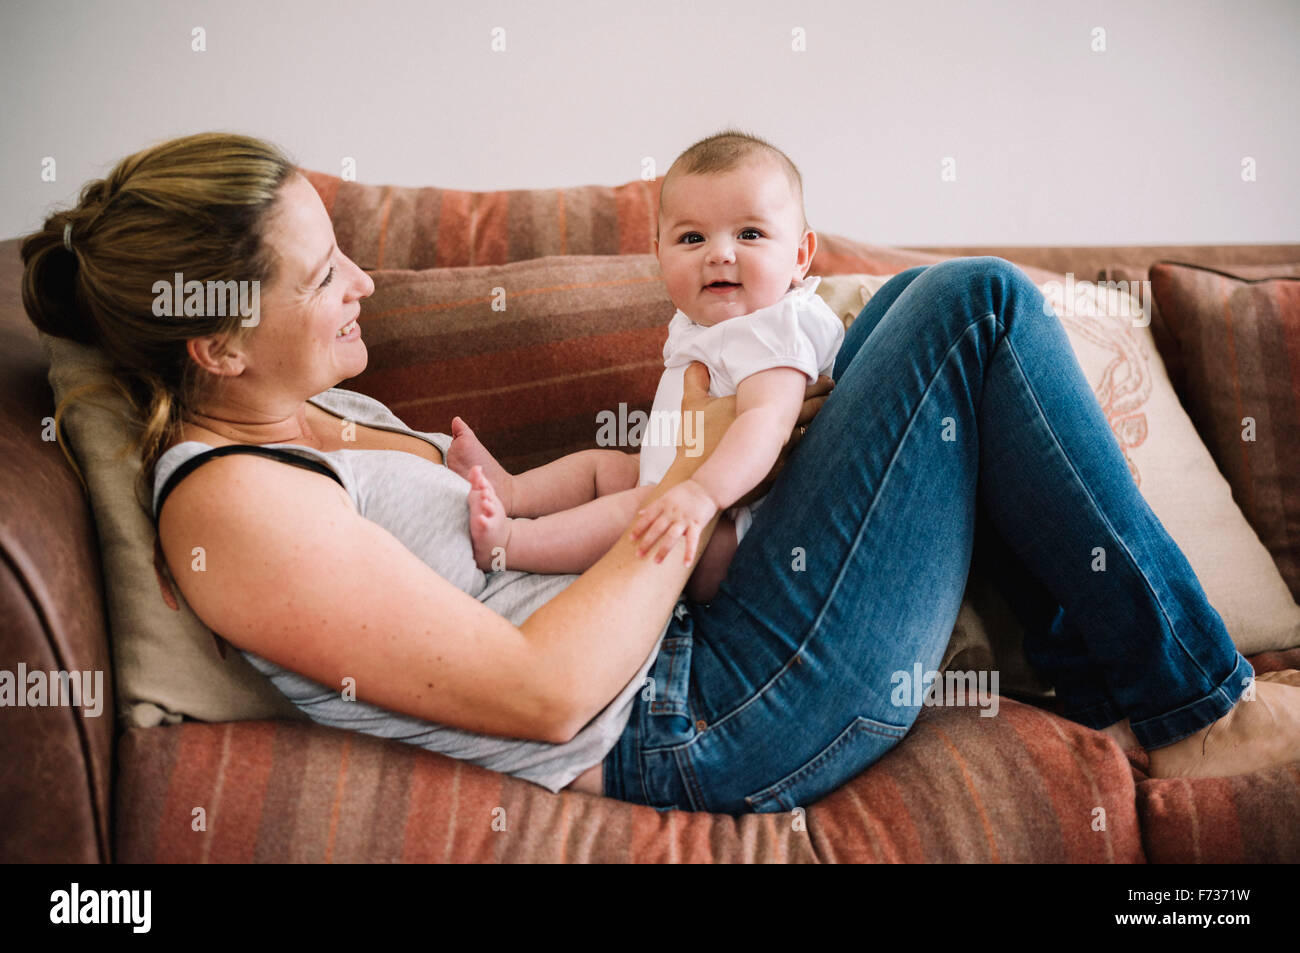 Une femme allongée sur un canapé à jouer avec une petite fille. Banque D'Images